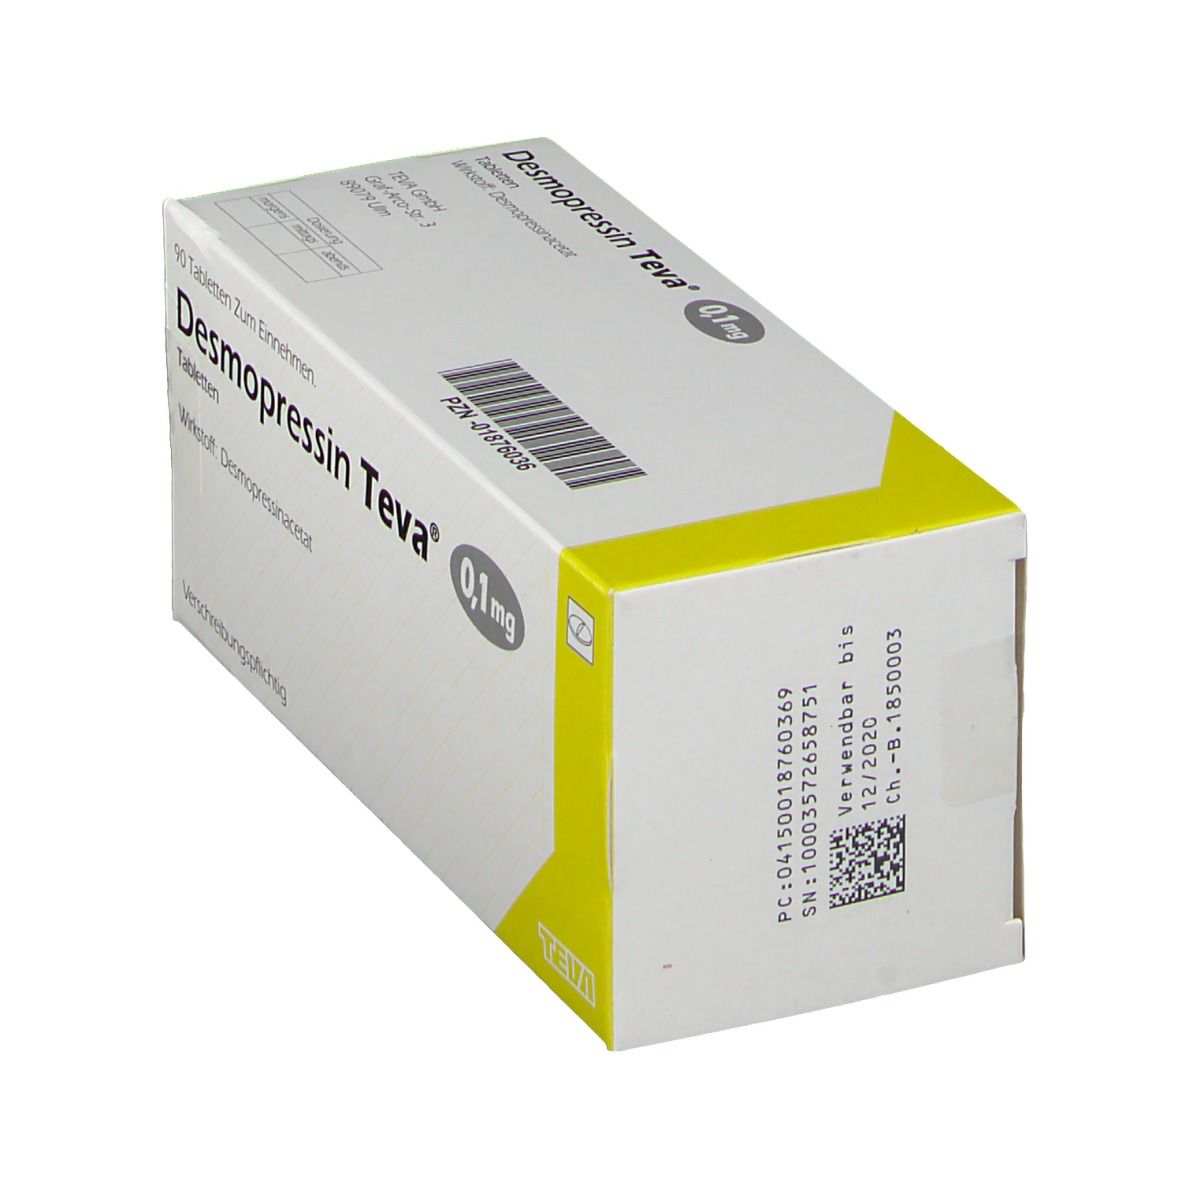 Desmopressin TEVA® 0,1 mg